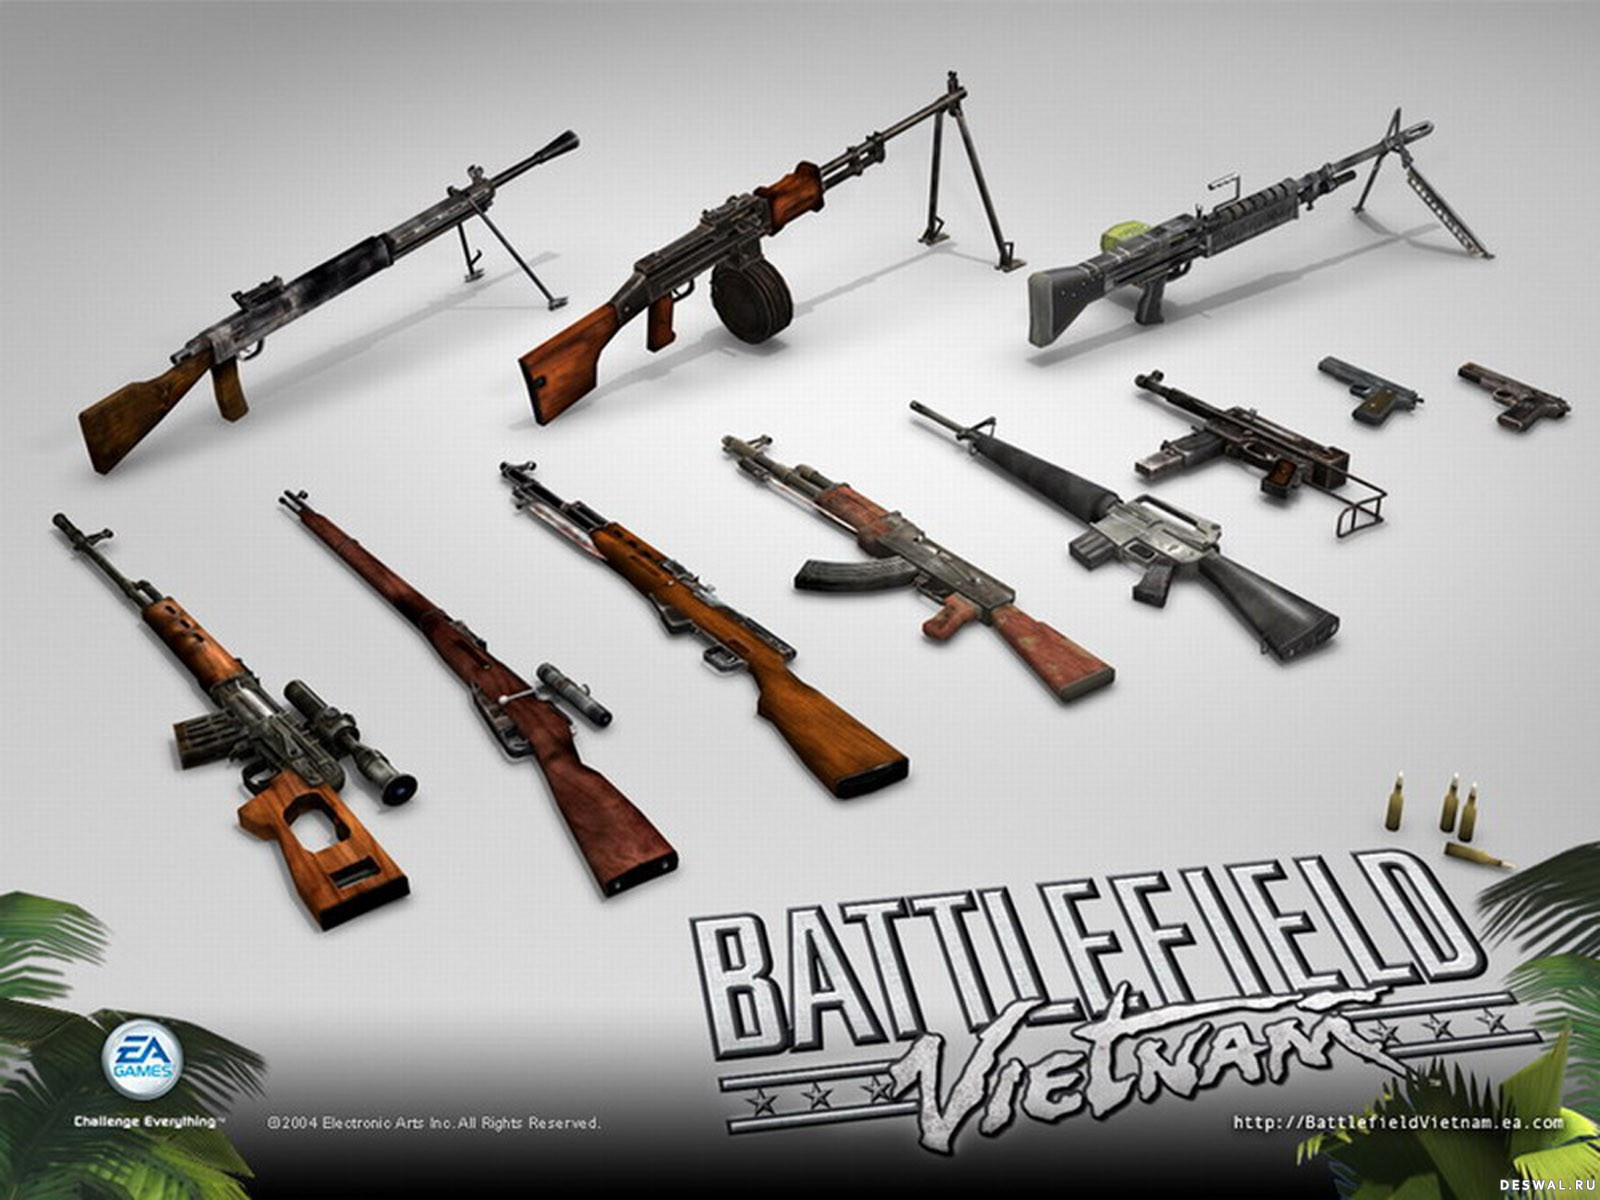 Компьютерная игра оружие. Бателфилд Вьетнам оружие. Оружие из Battlefield Vietnam. Оружие в компьютерных играх. Оружие в играх.